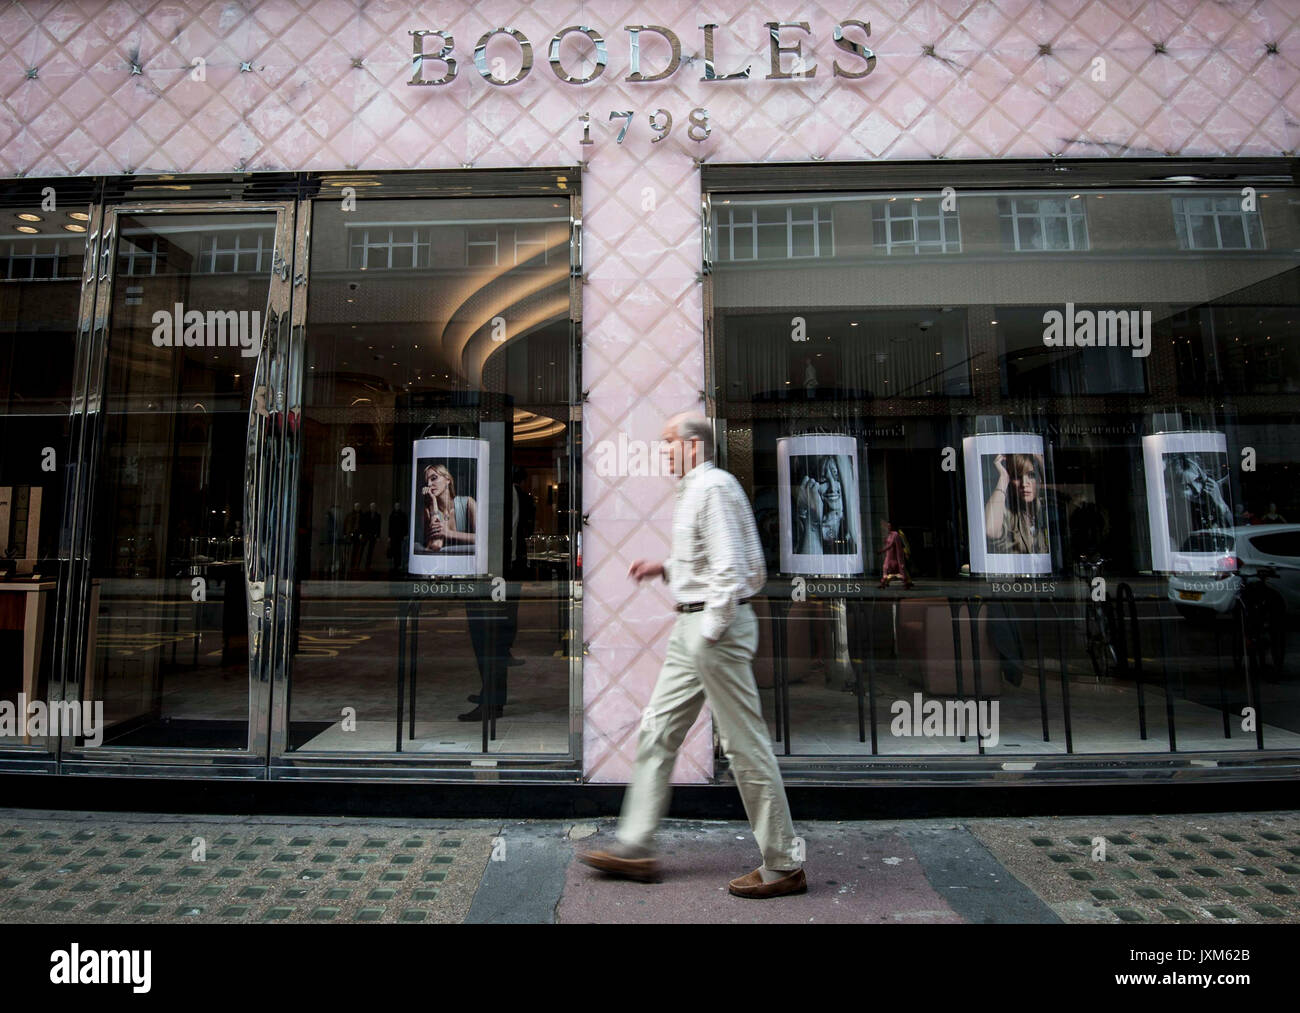 Boodles Jewellers, Sloane Street, London